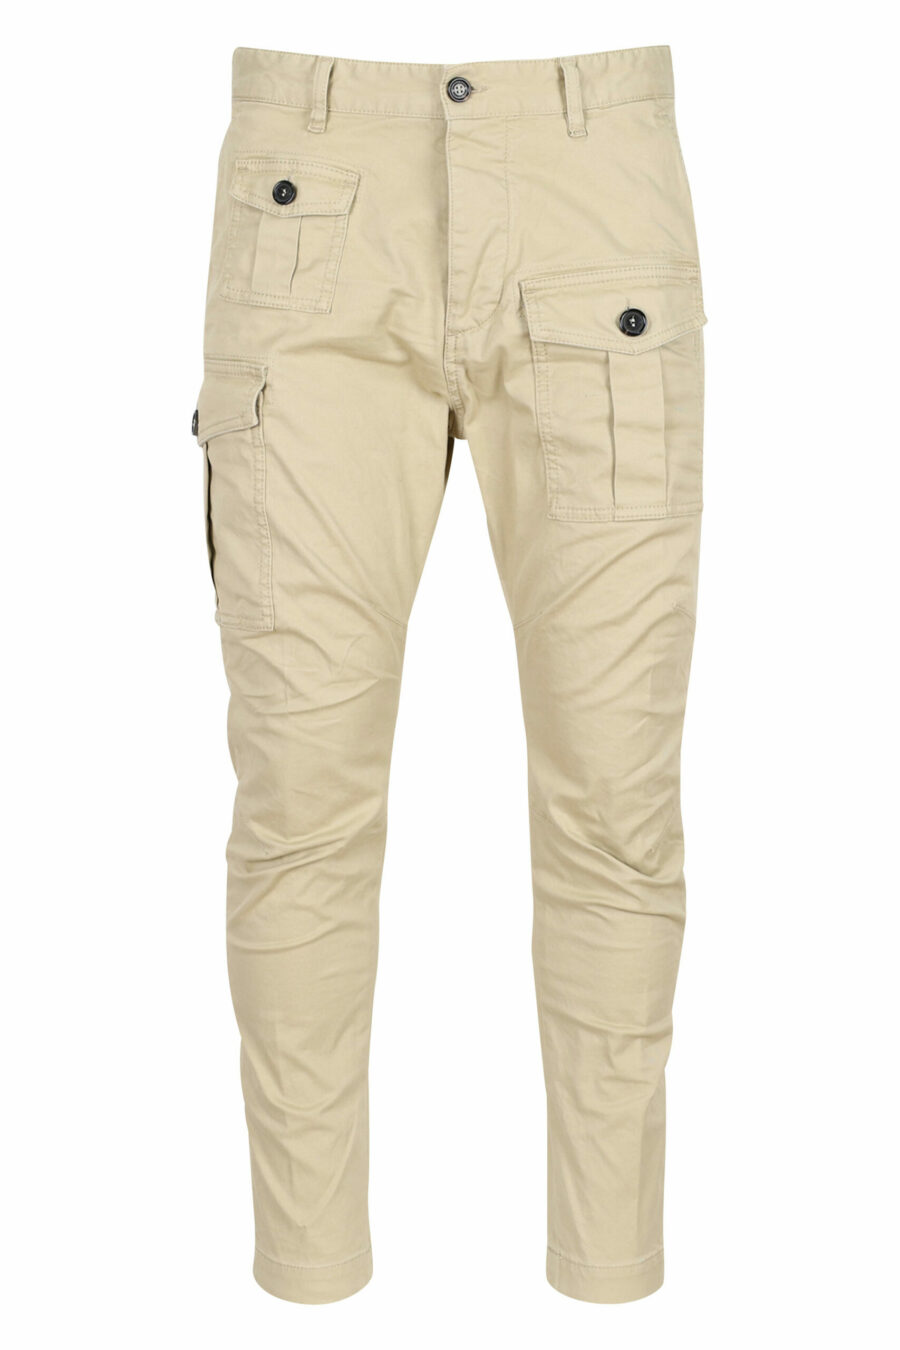 Pantalon cargo sexy beige avec poches sur les côtés - 8052134973615